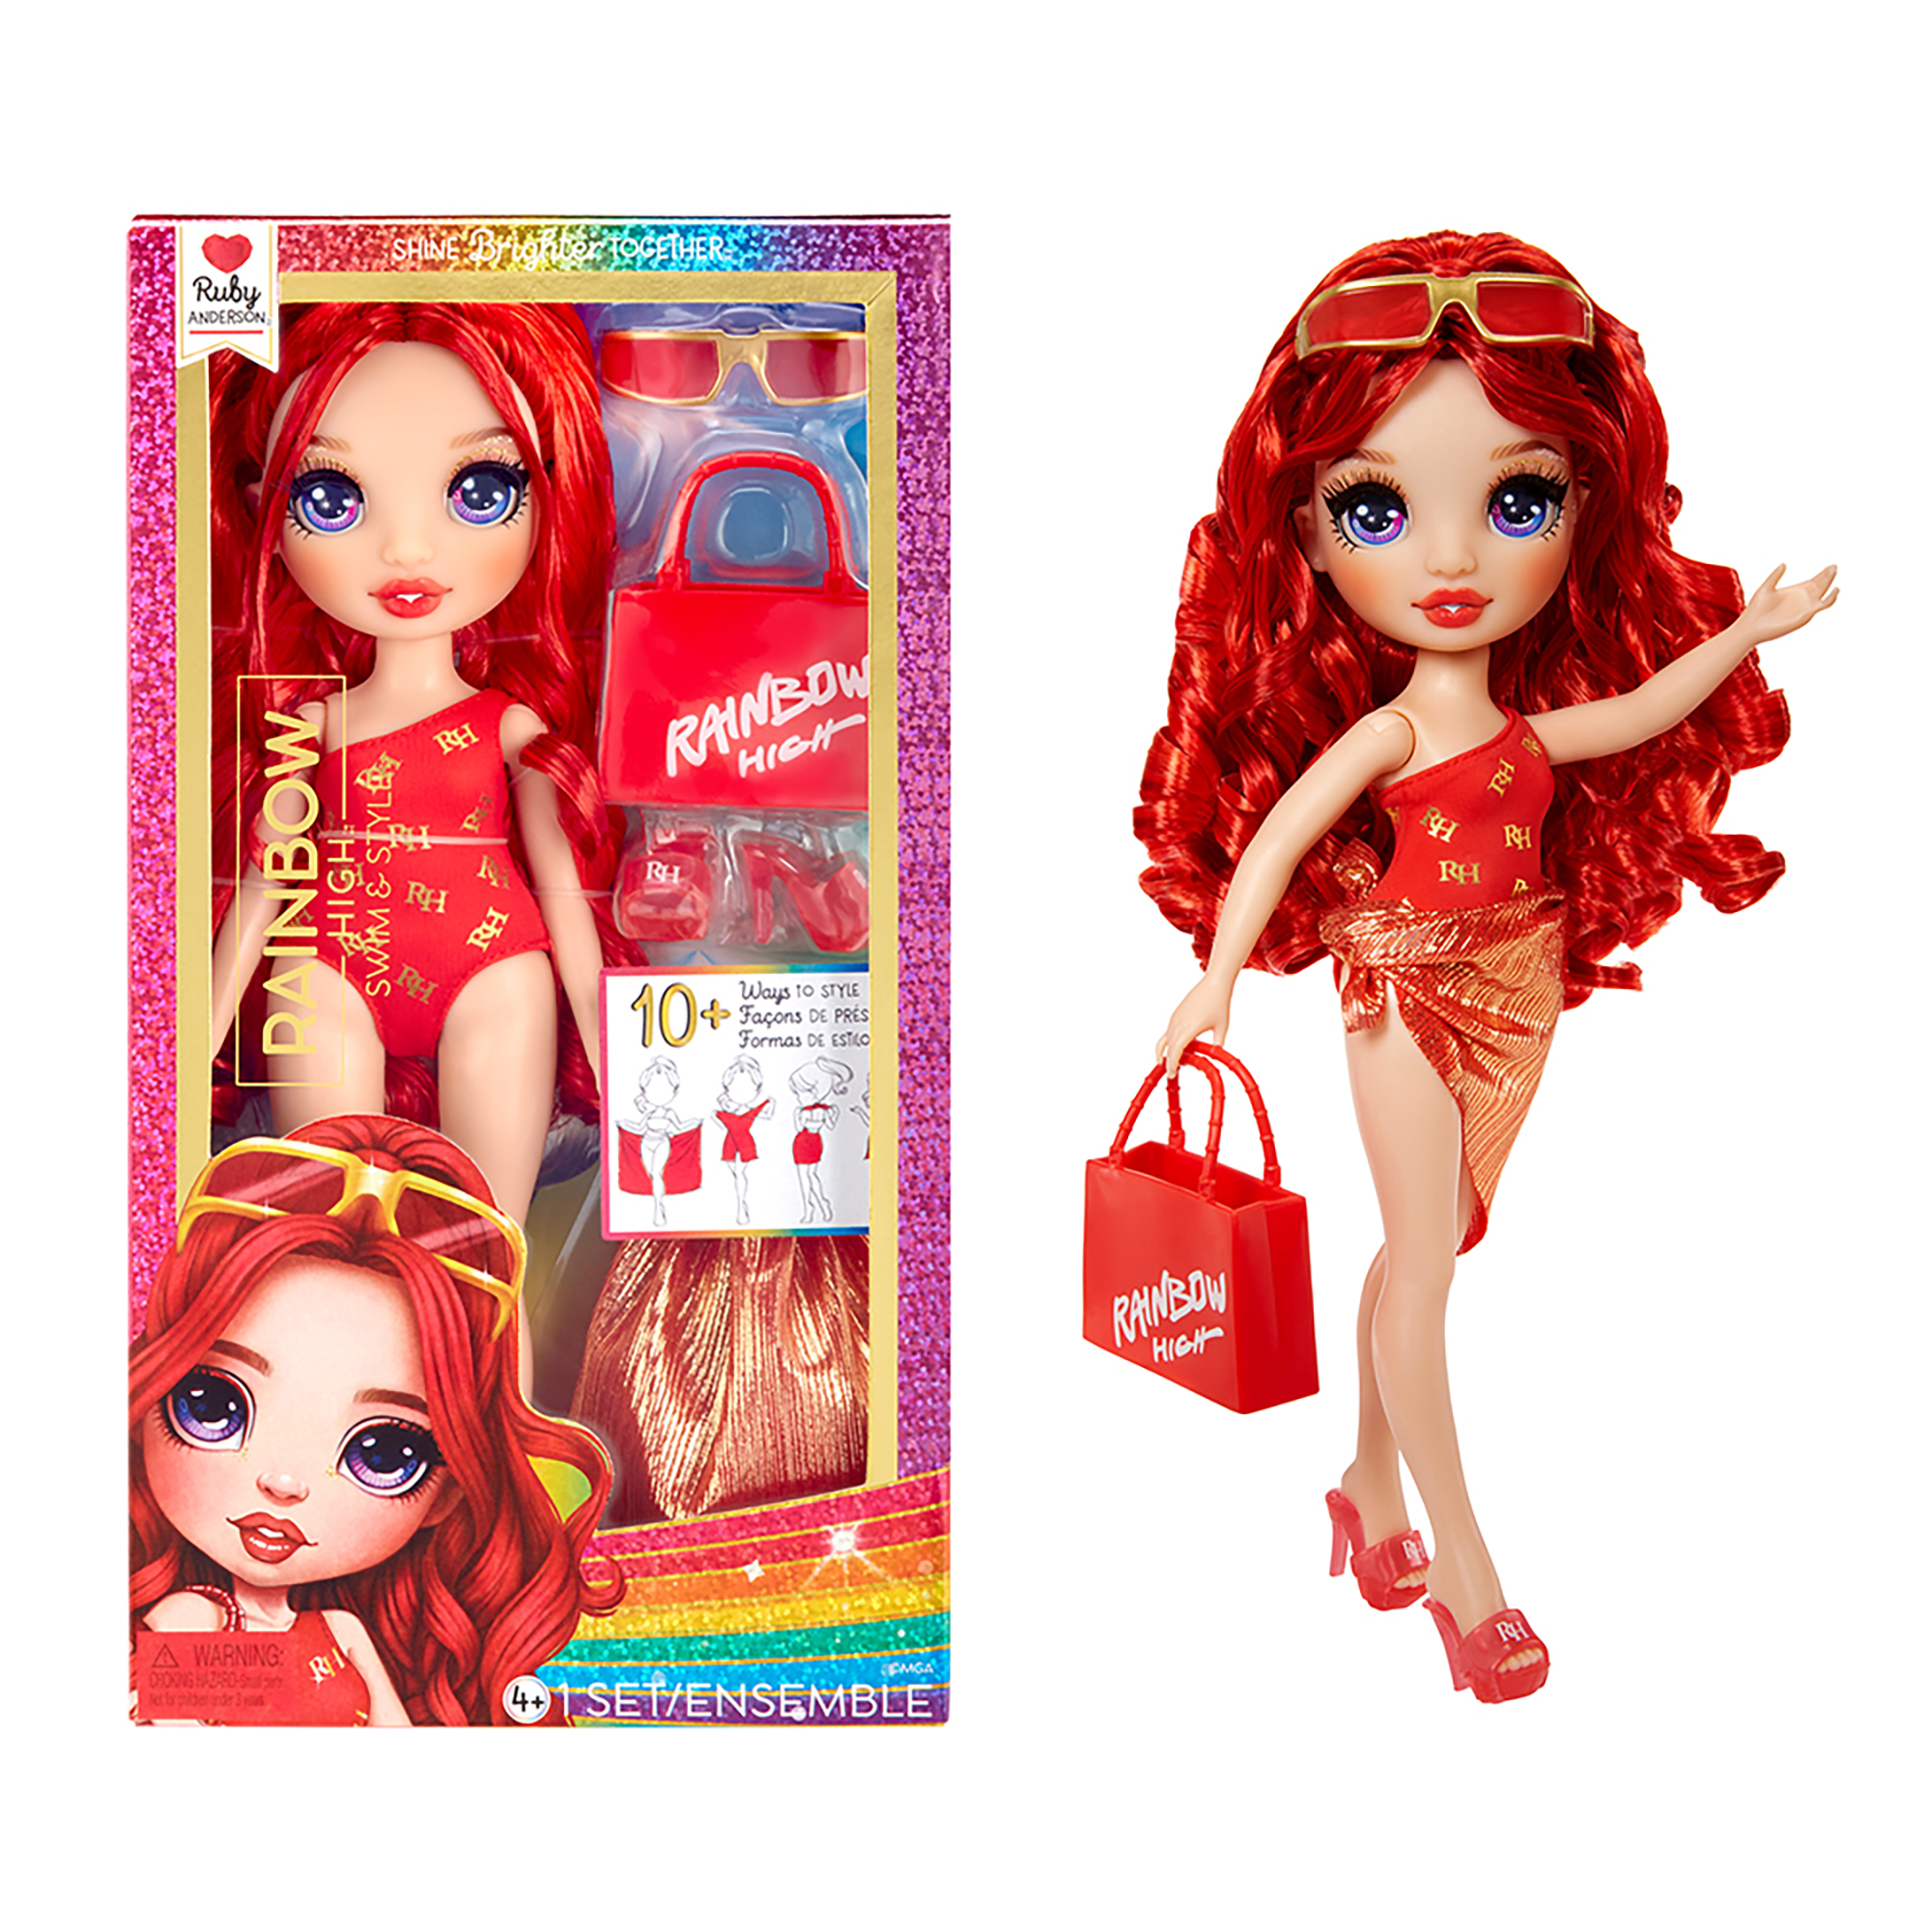 Rainbow high swim & style - ruby (rossa) - bambola da 28 cm con confezione scintillante e oltre 10 outfit - costume da bagno rimovibile, sandali, accessori divertenti - Rainbow High